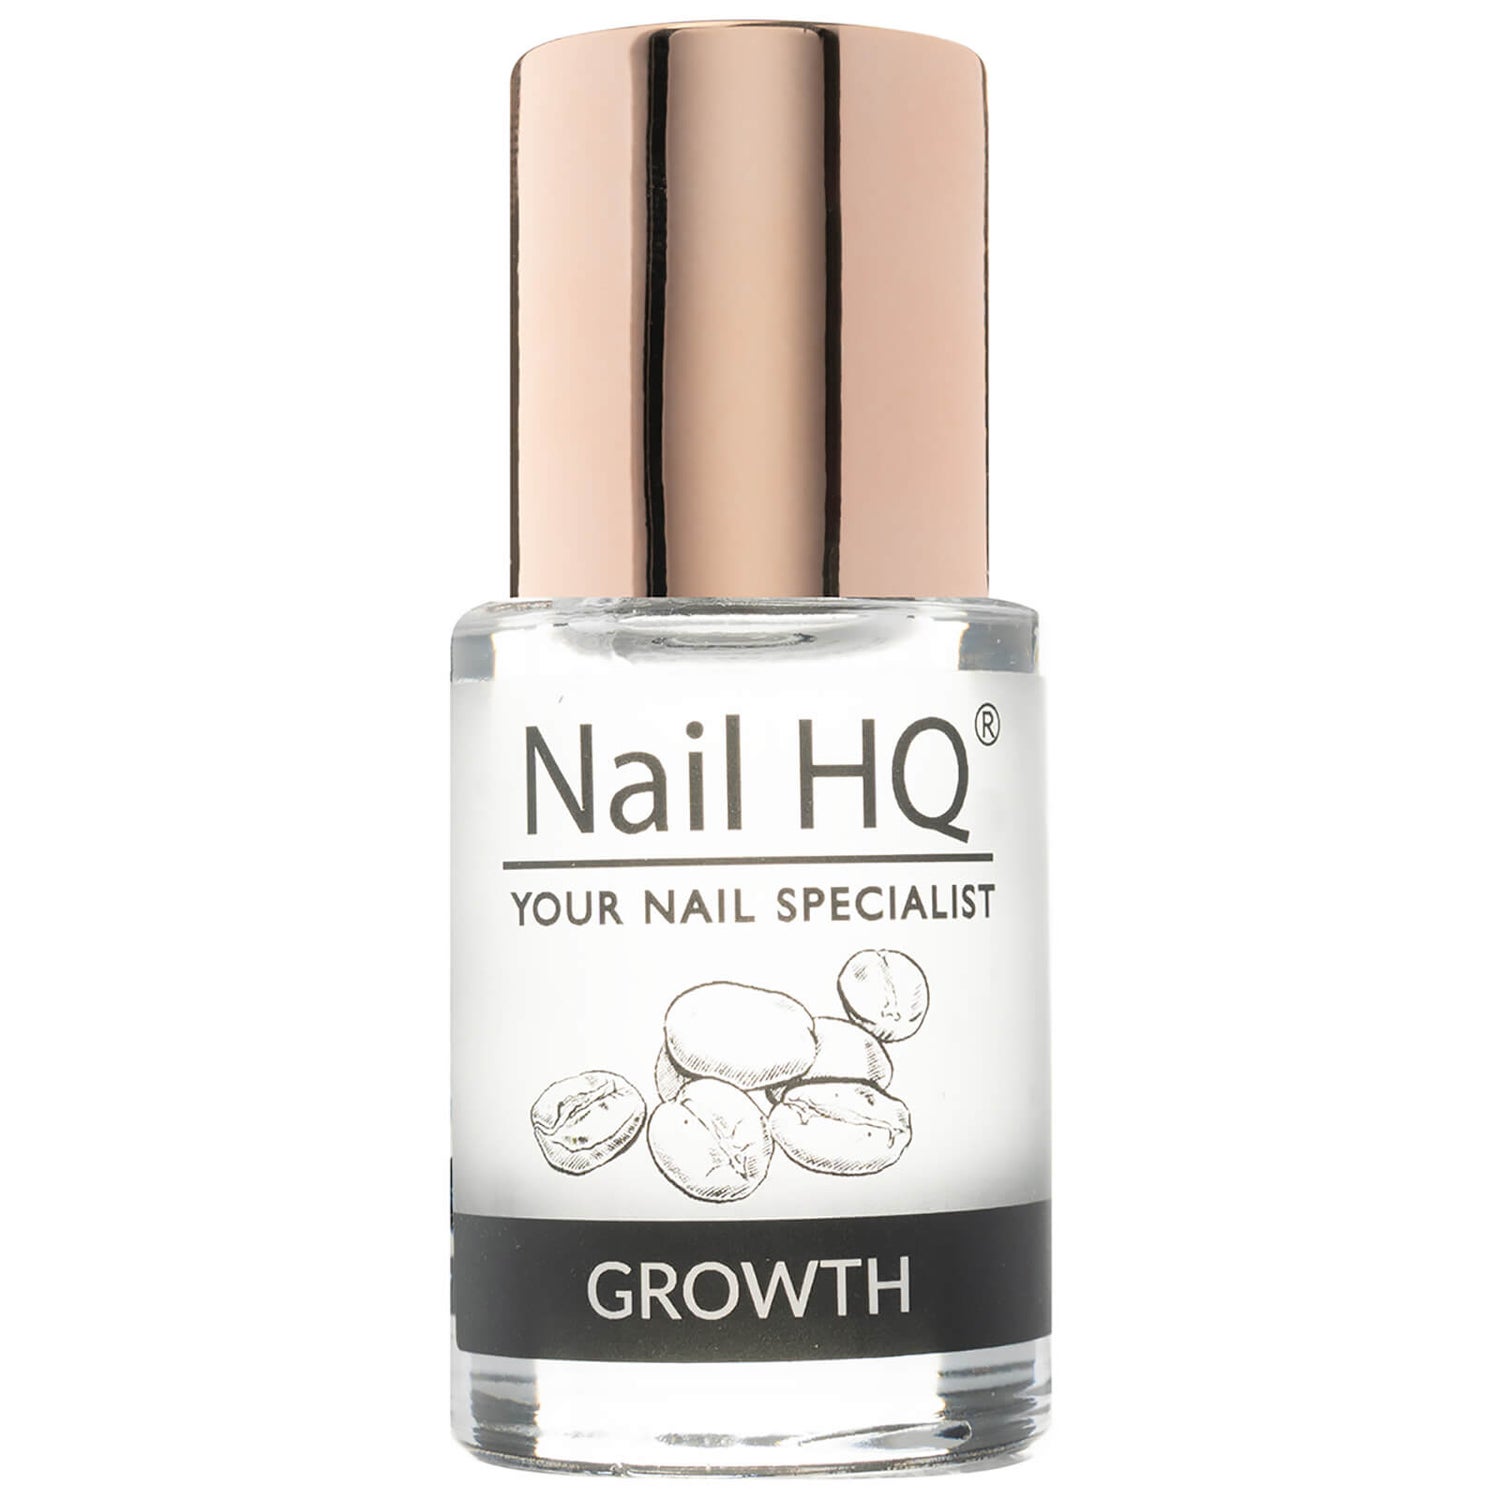 Nail HQ Nail Growth Treatment 10ml | Free US Shipping | lookfantastic